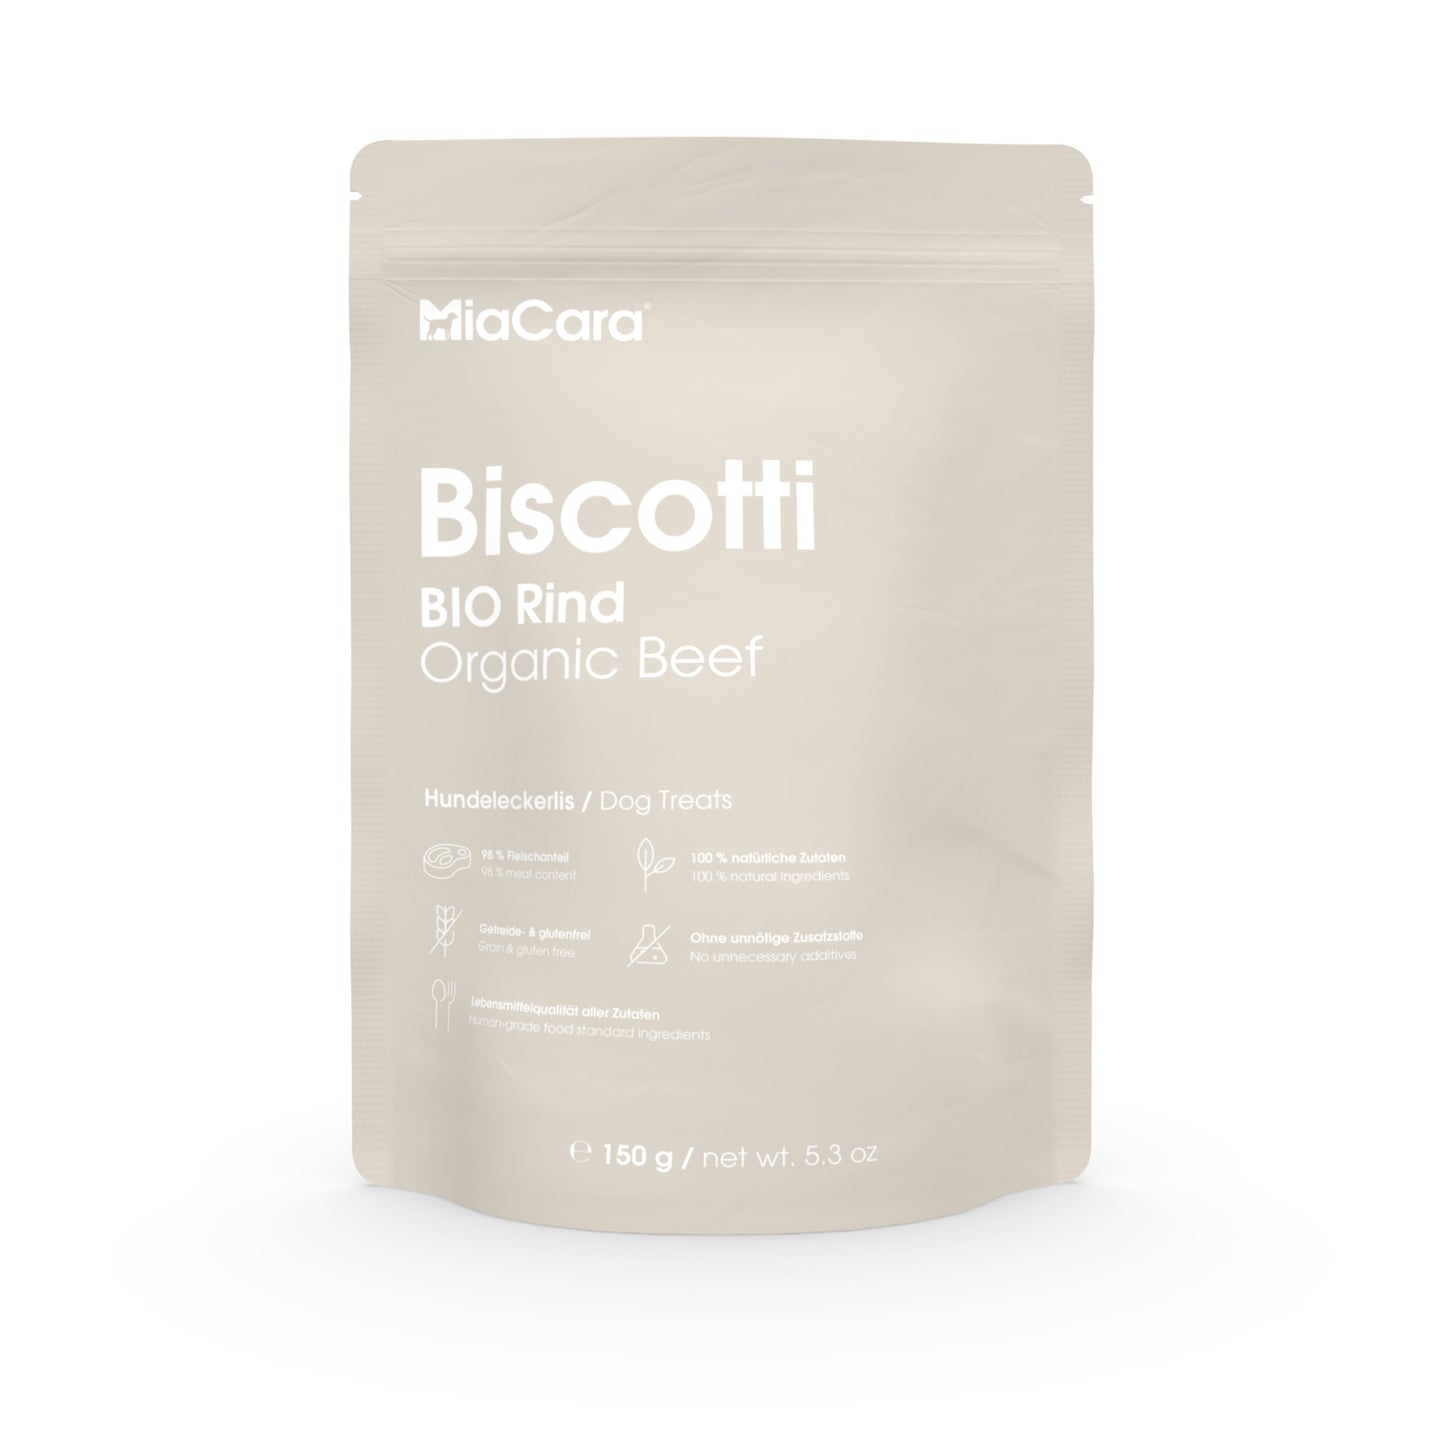 MiaCara • Recompense Biscotti (carne organică de vită) 150g